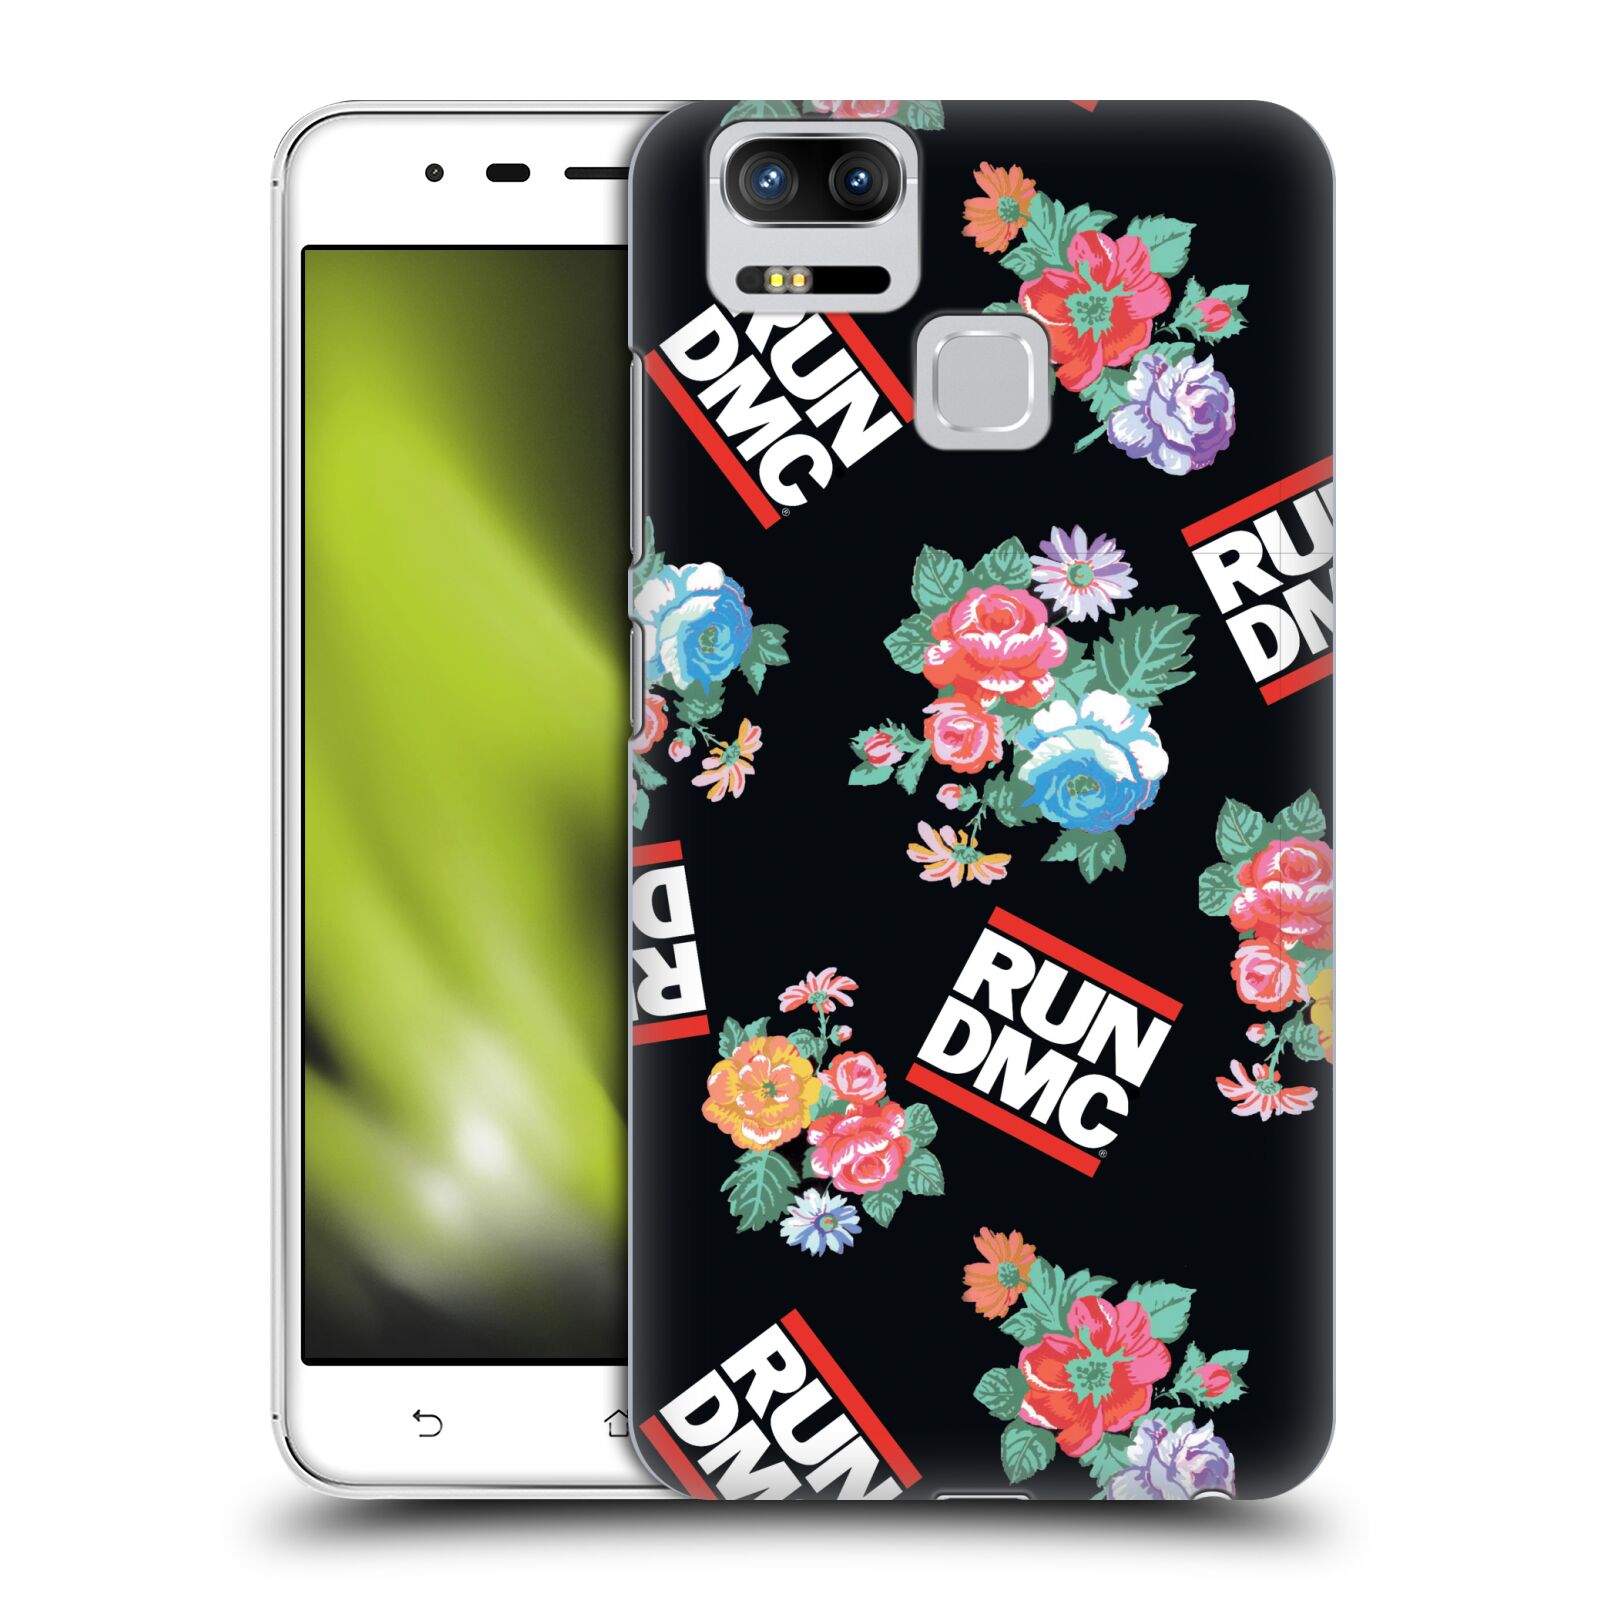 HEAD CASE plastový obal na mobil Asus Zenfone 3 Zoom ZE553KL rapová kapela Run DMC květiny černé pozadí